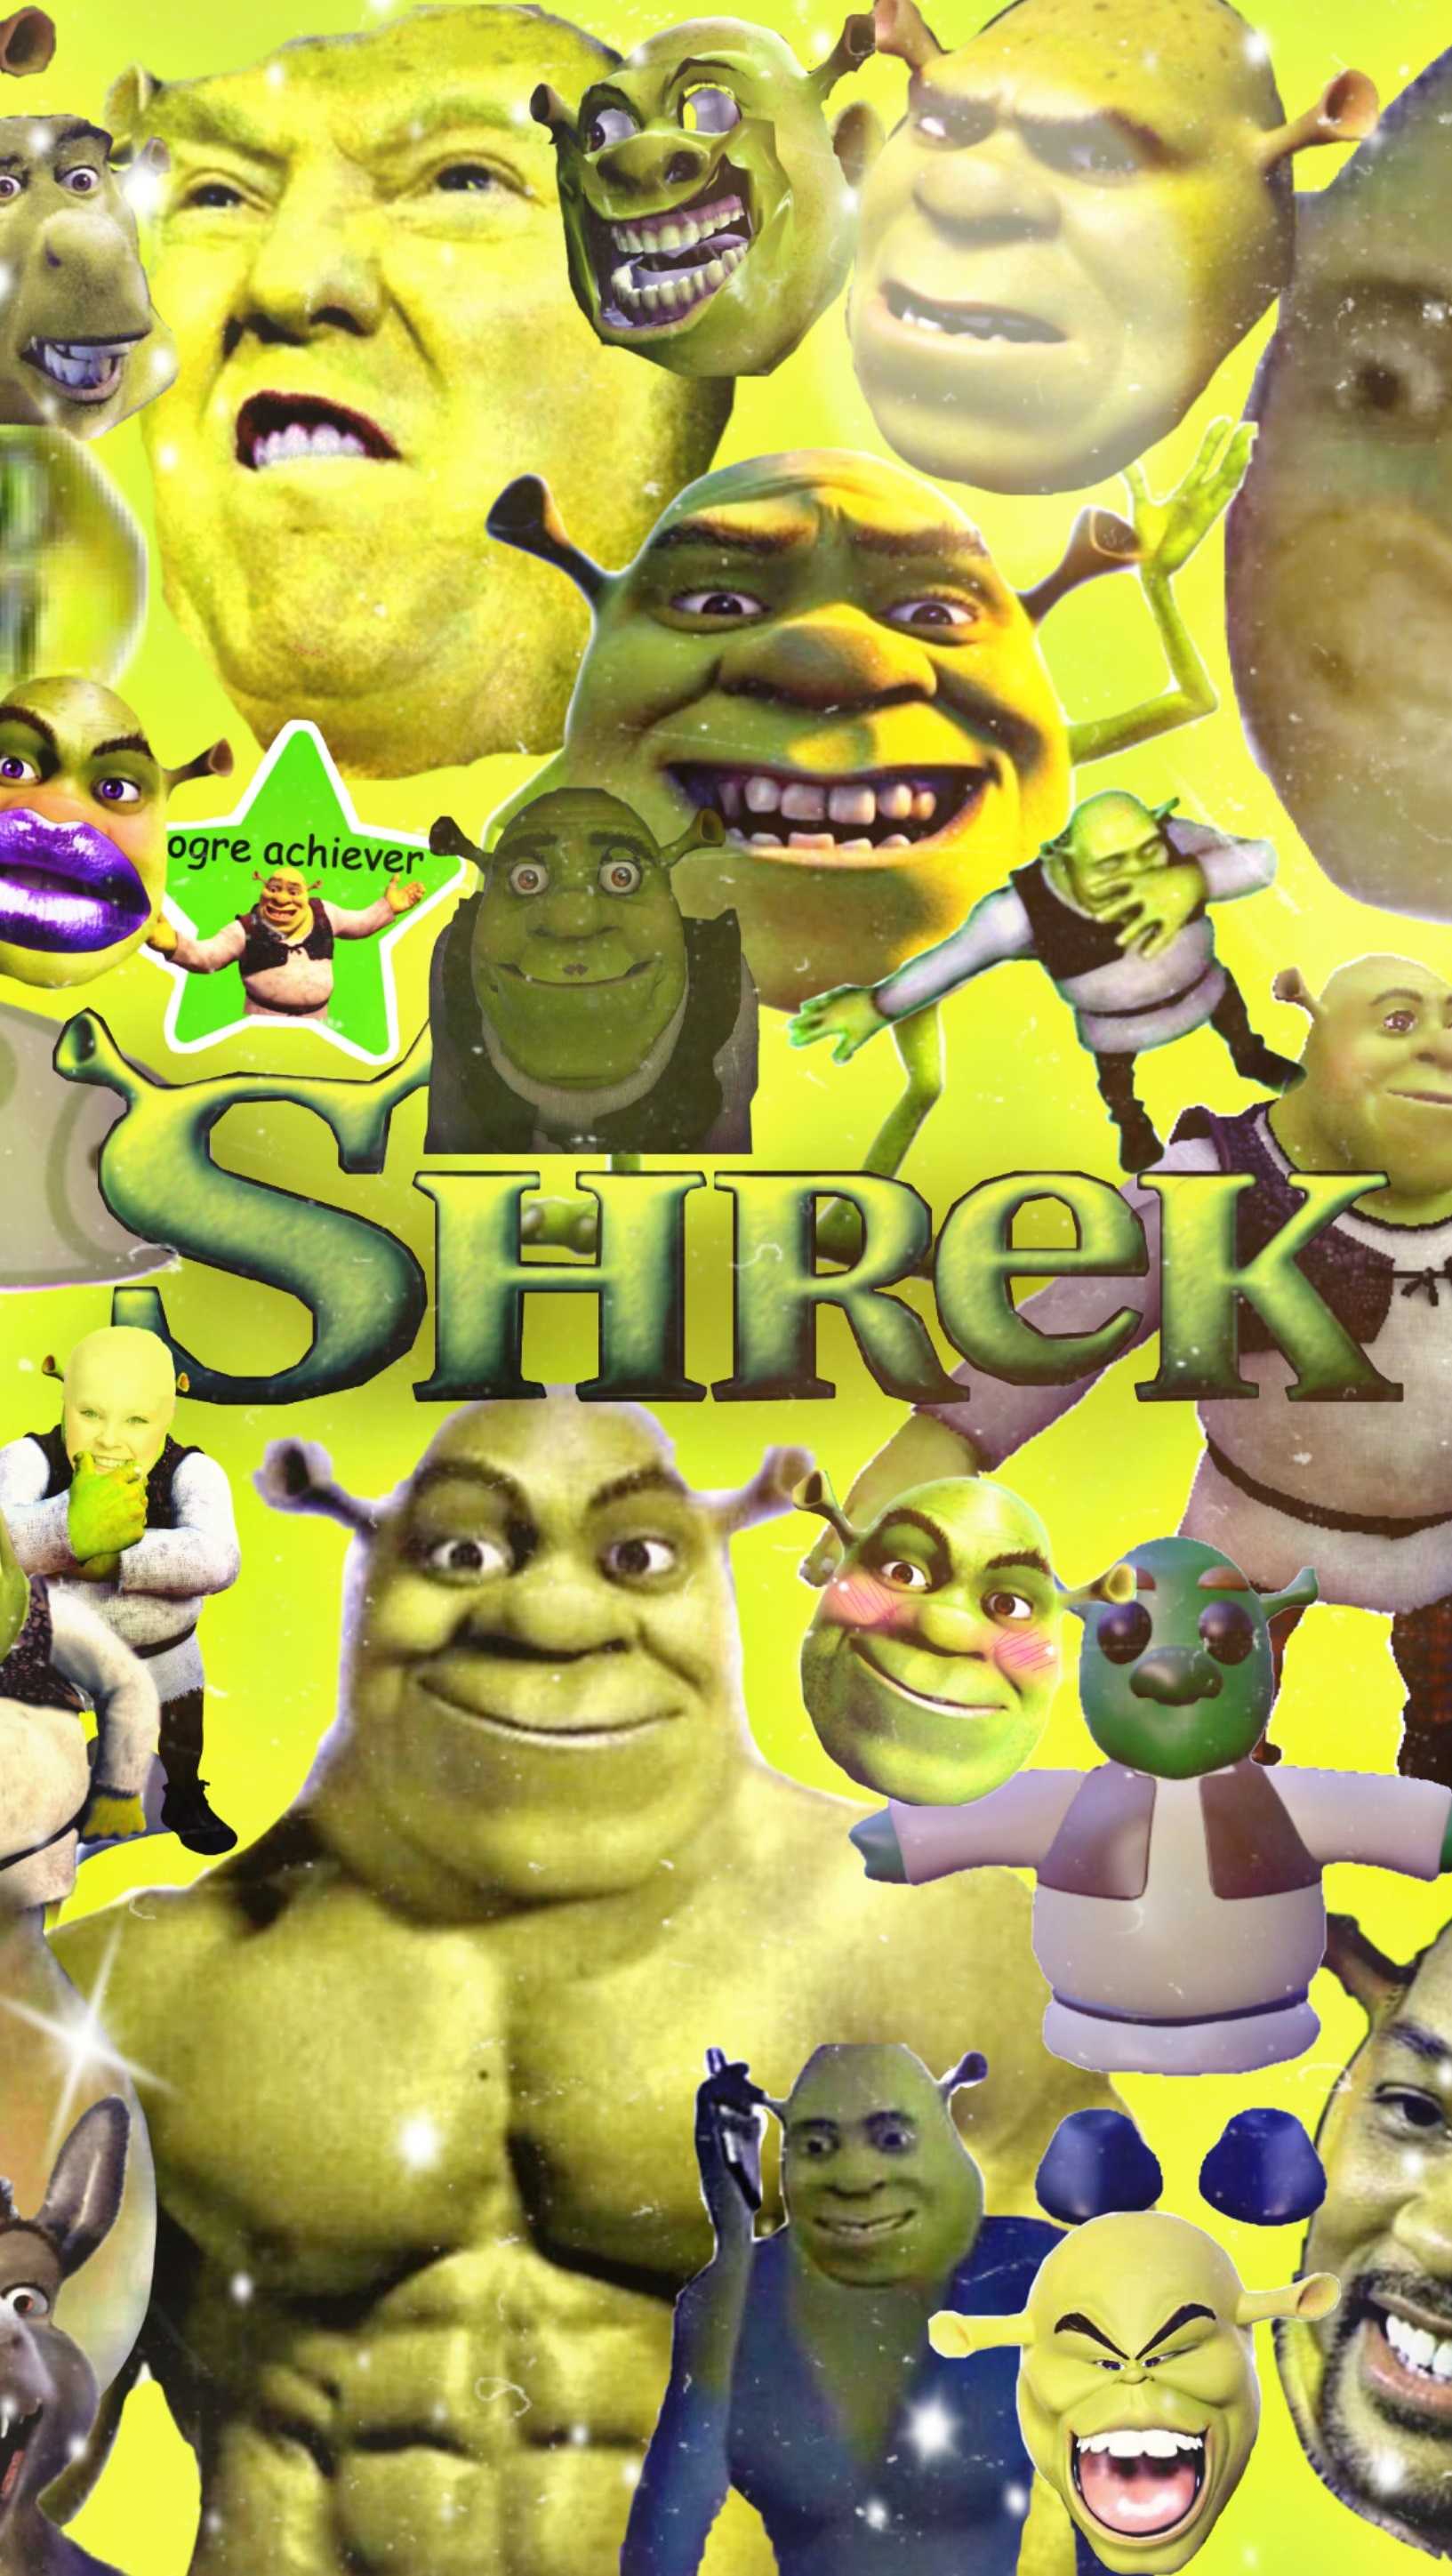 30+] Shrek Phone Wallpapers - WallpaperSafari